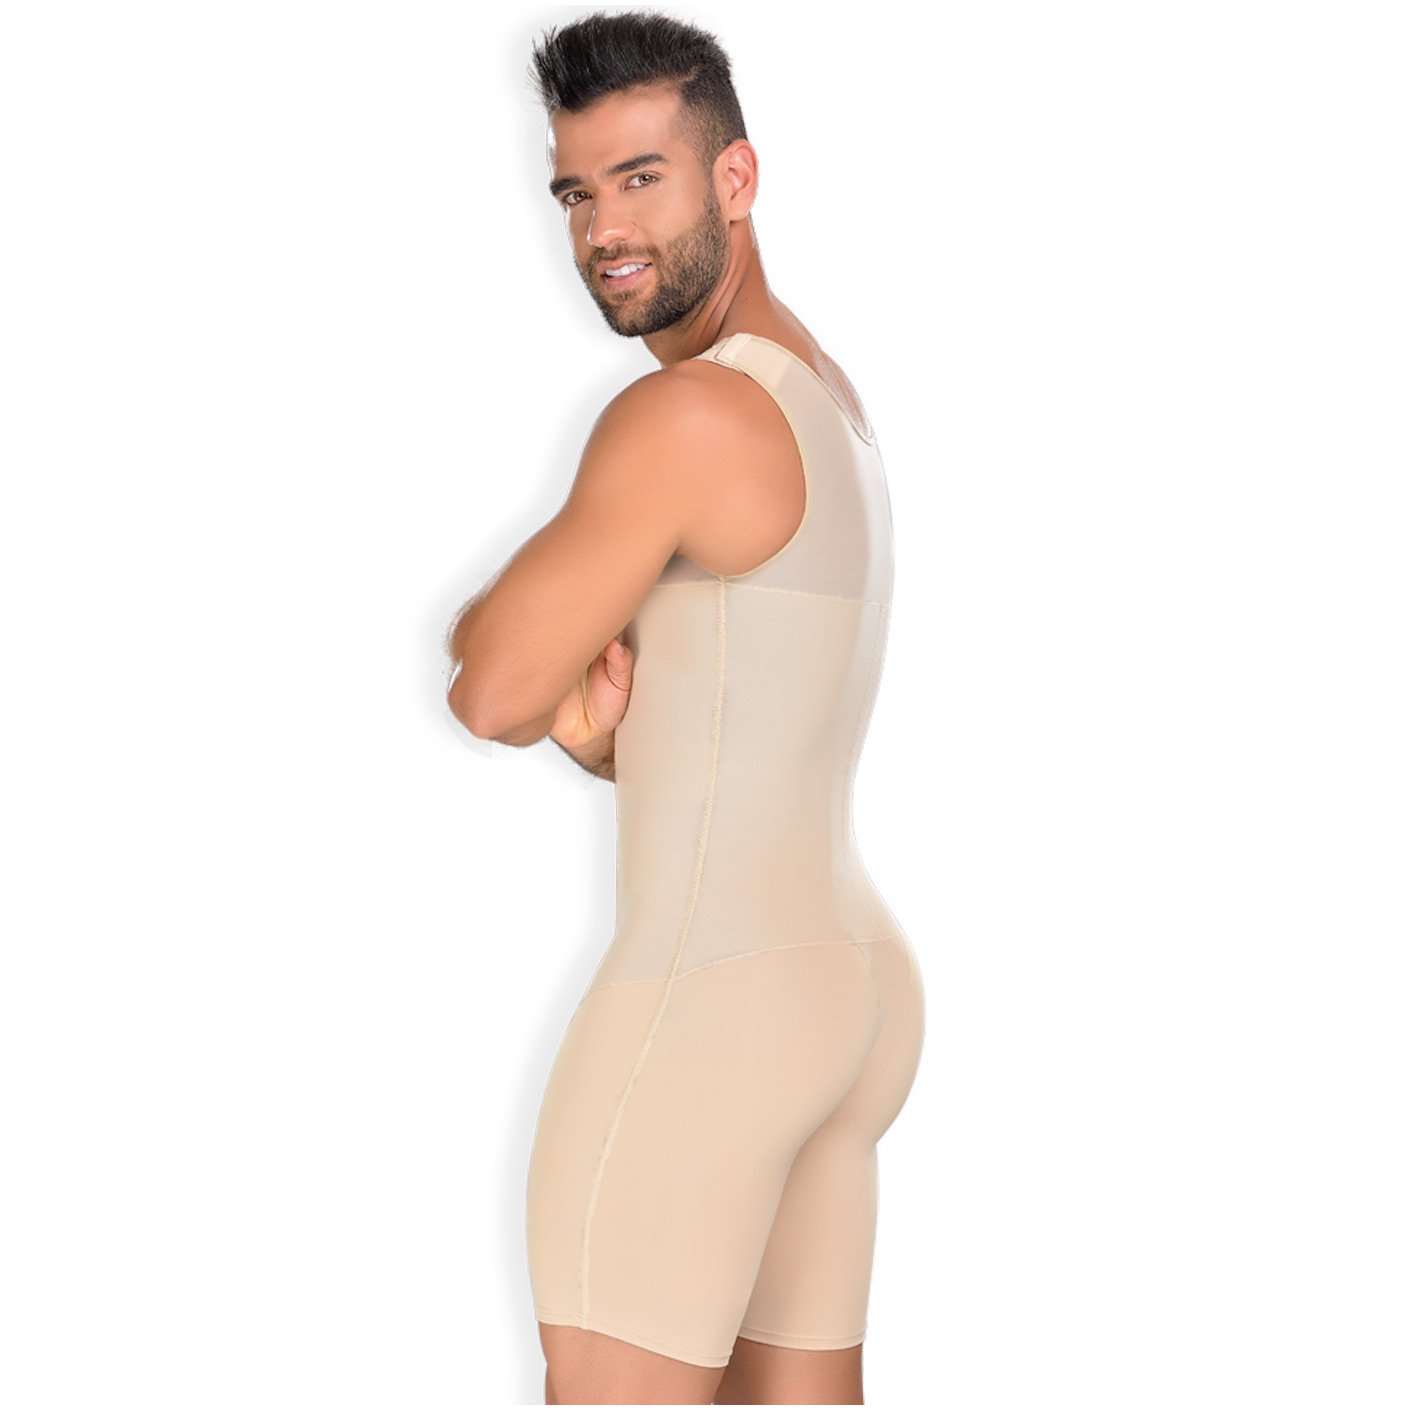 https://fajascolombianas.shop/cdn/shop/products/Colombian-Tummy-Control-Shapewear-for-Men-Fajas-Colombianas-MYD-0061-Fajas-MyD-2.jpg?v=1631747511